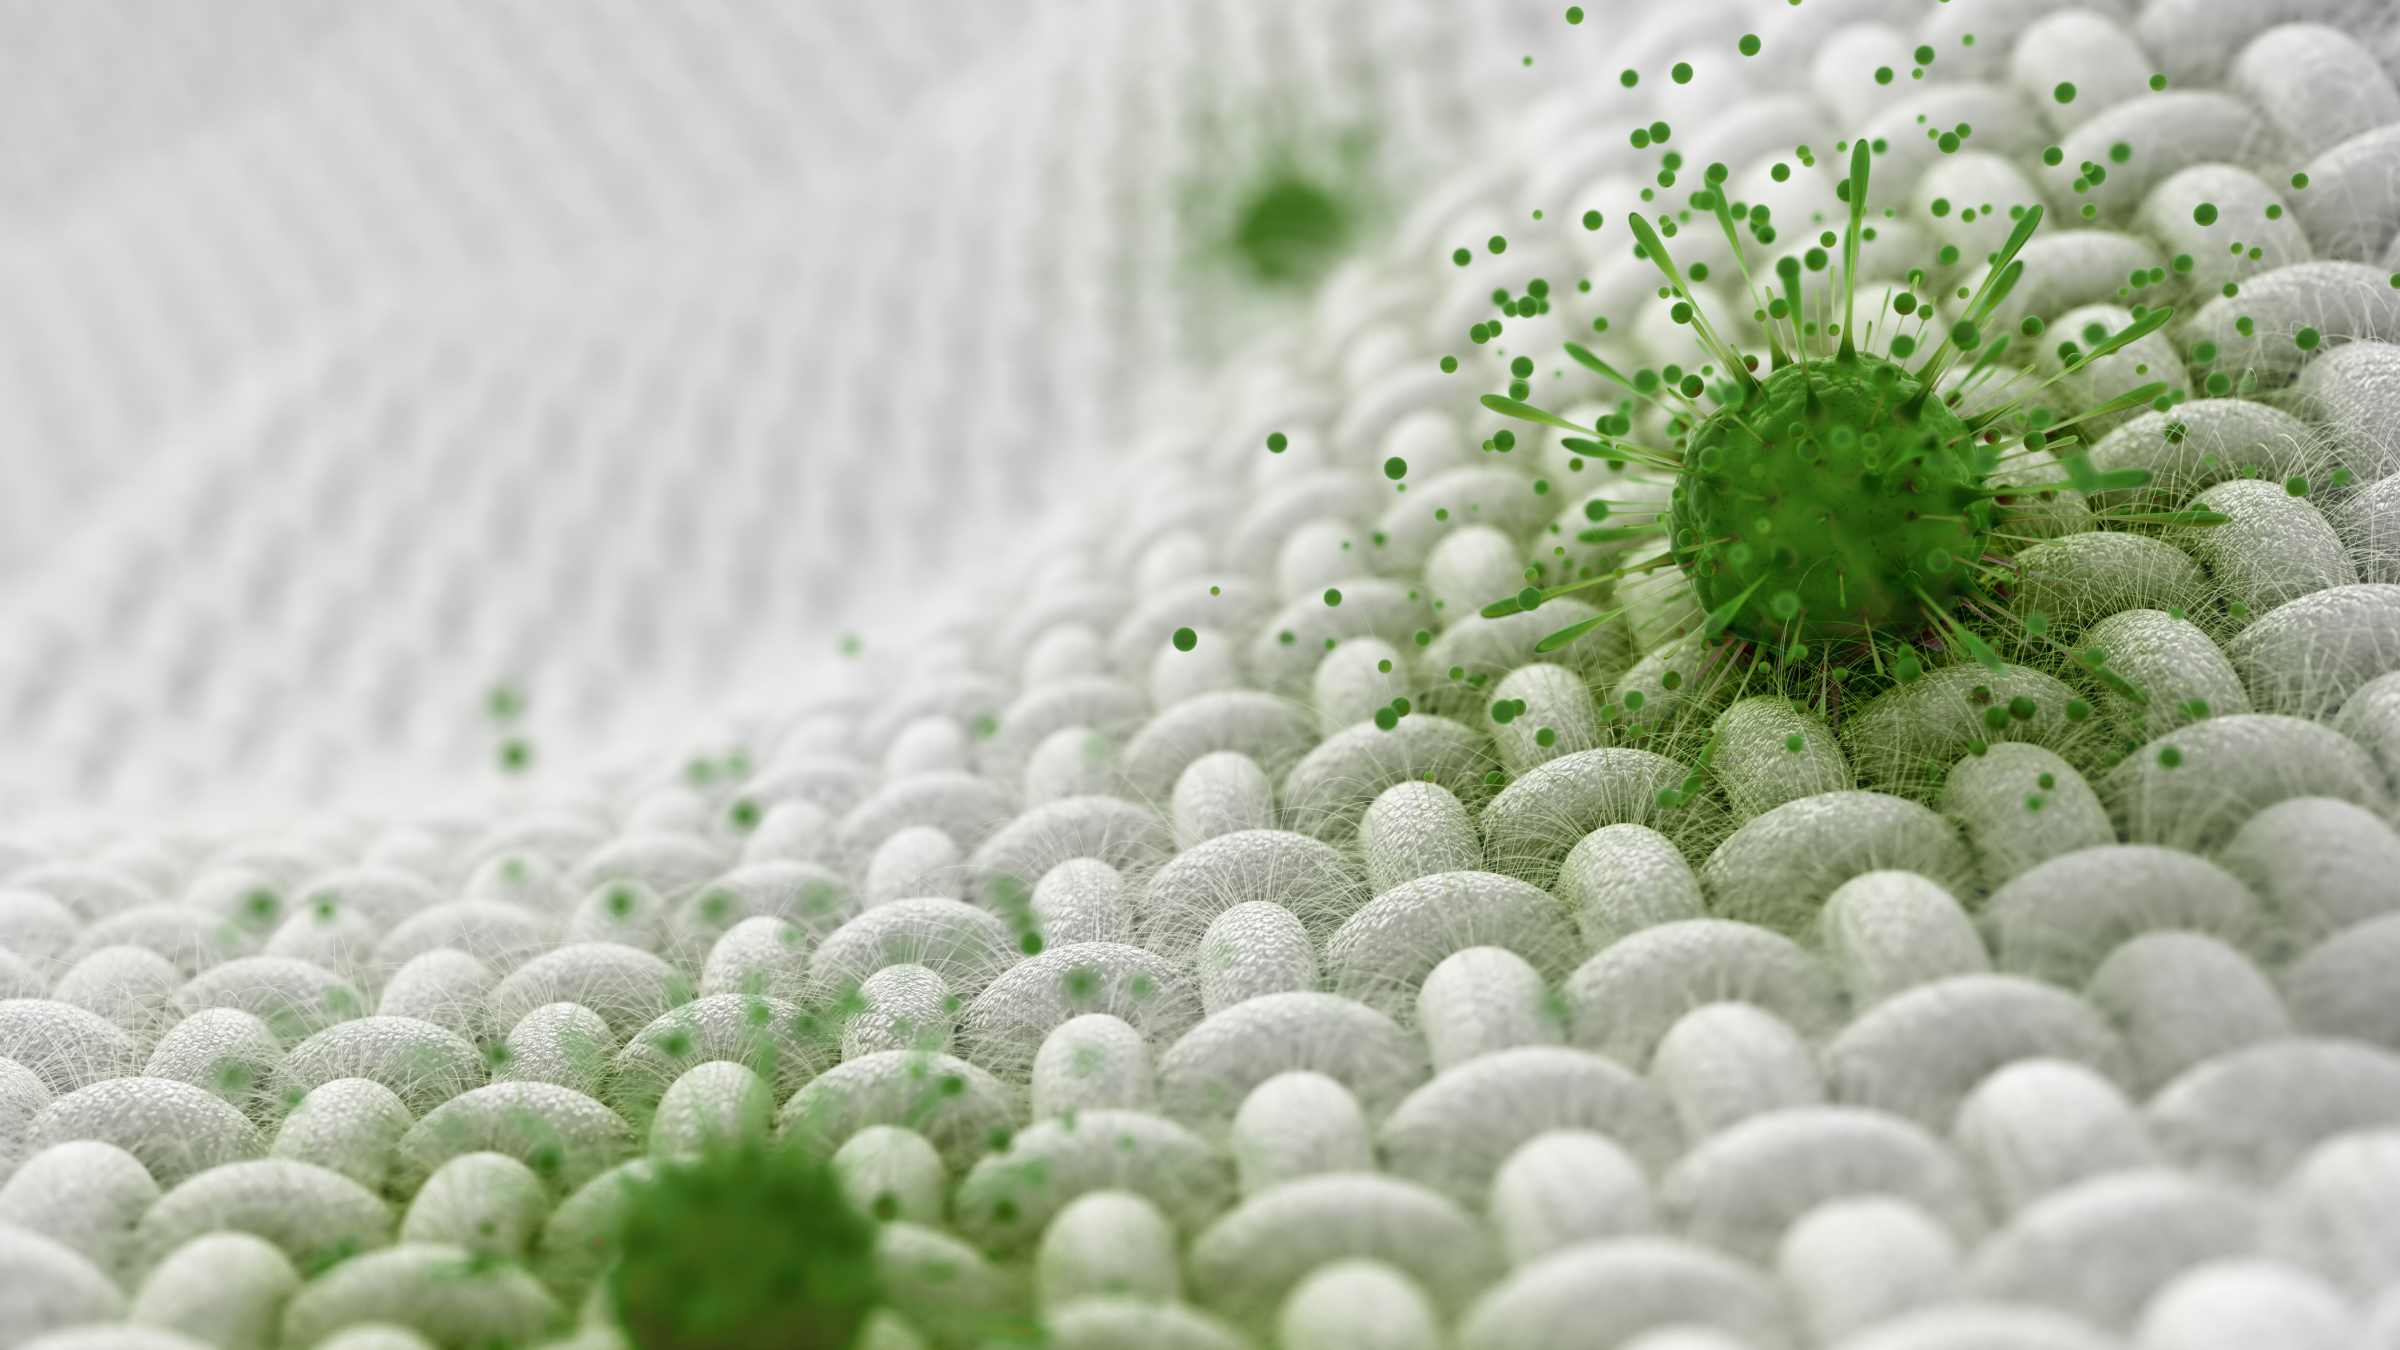 the fabric compatibility of bio and non bio detergent